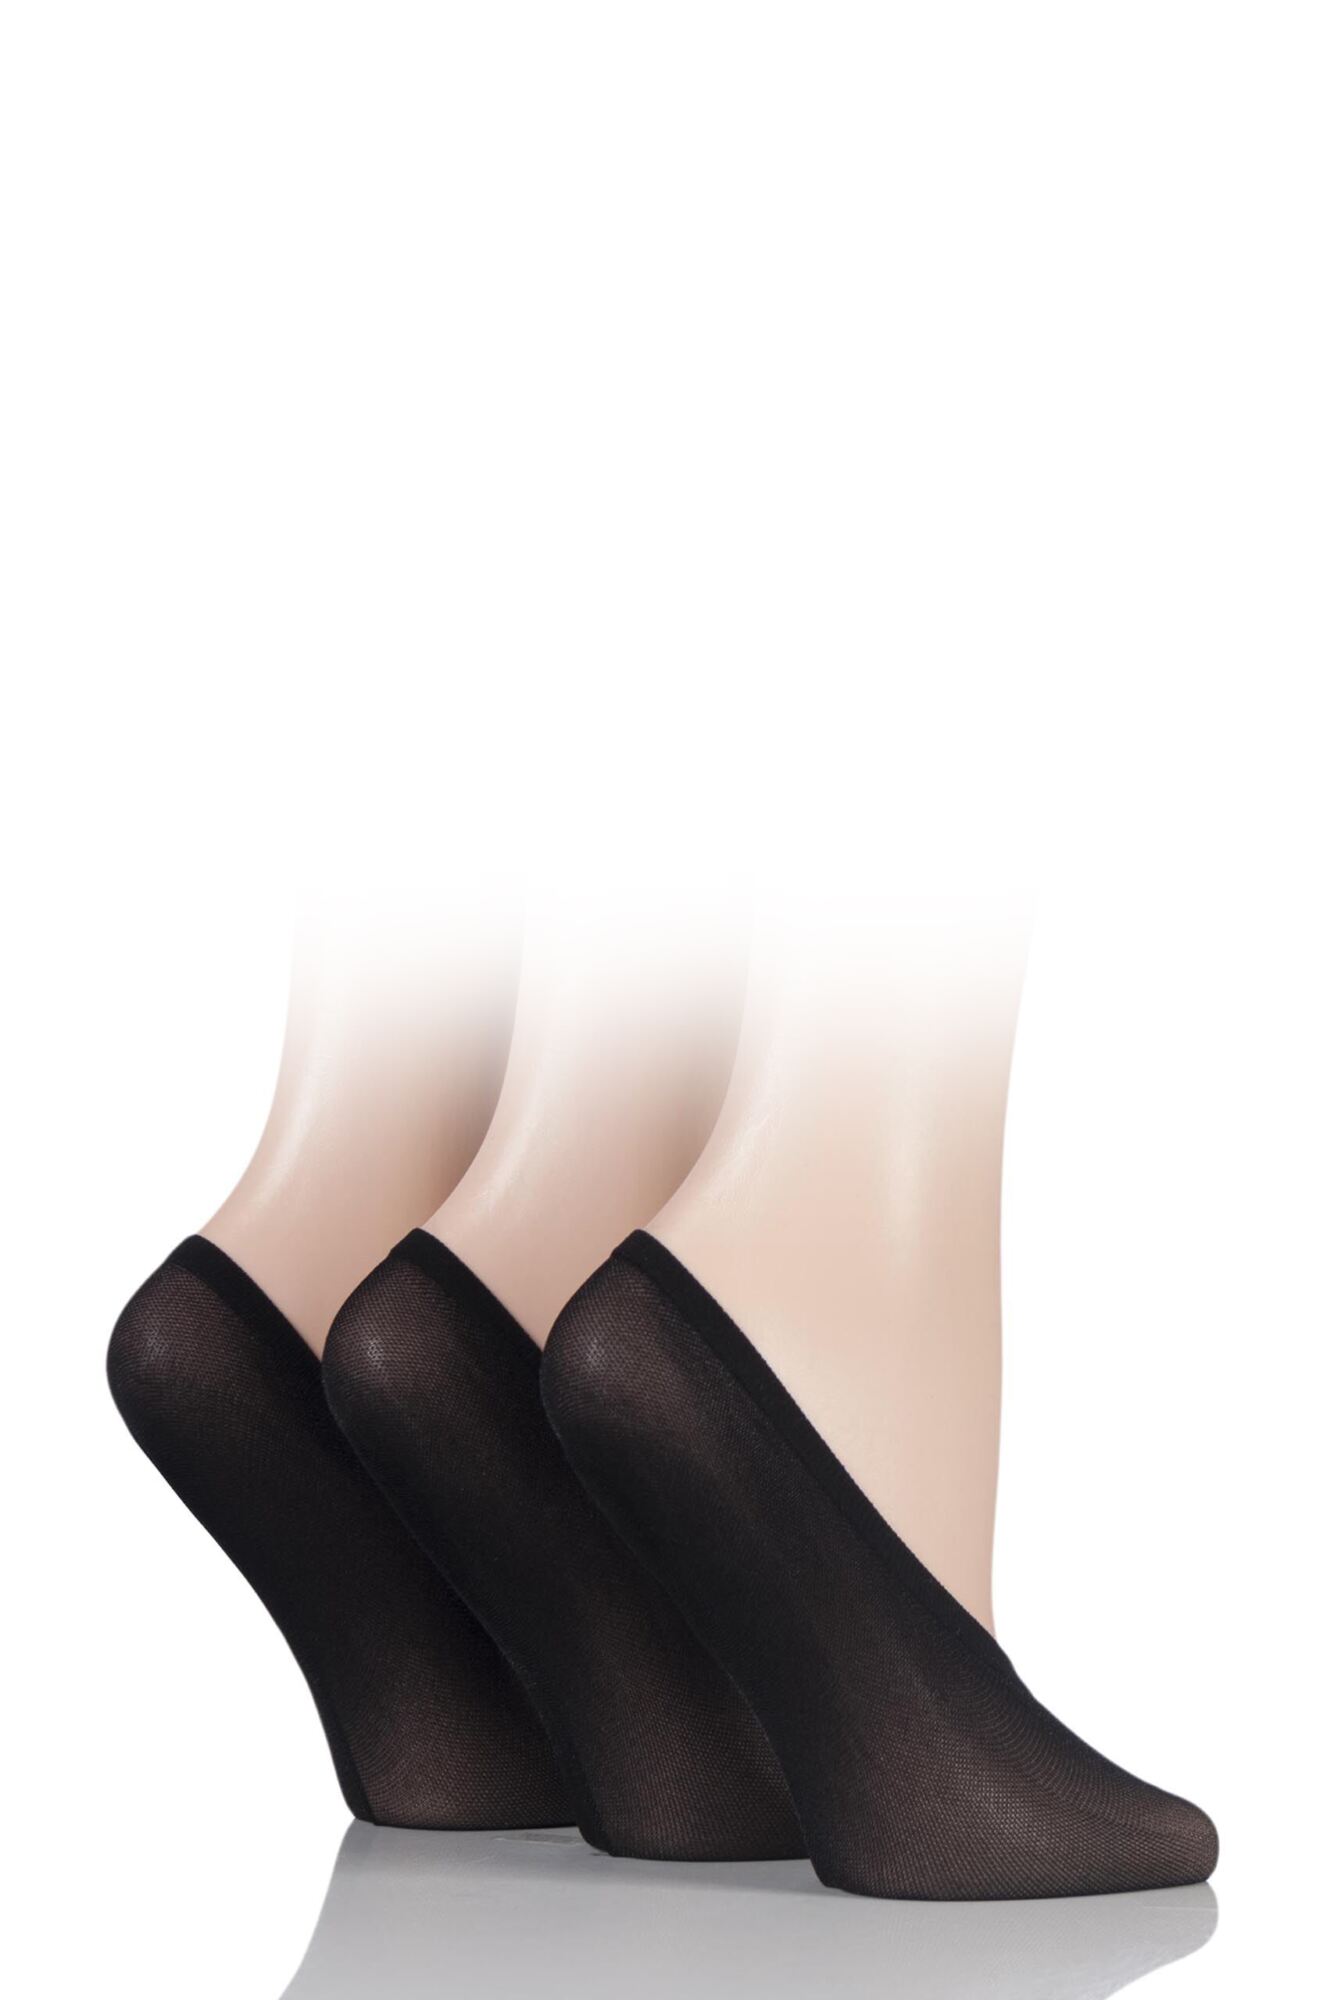 Ladies SOCKSHOP Soft Sheen Shoe Liner Socks from SOCKSHOP